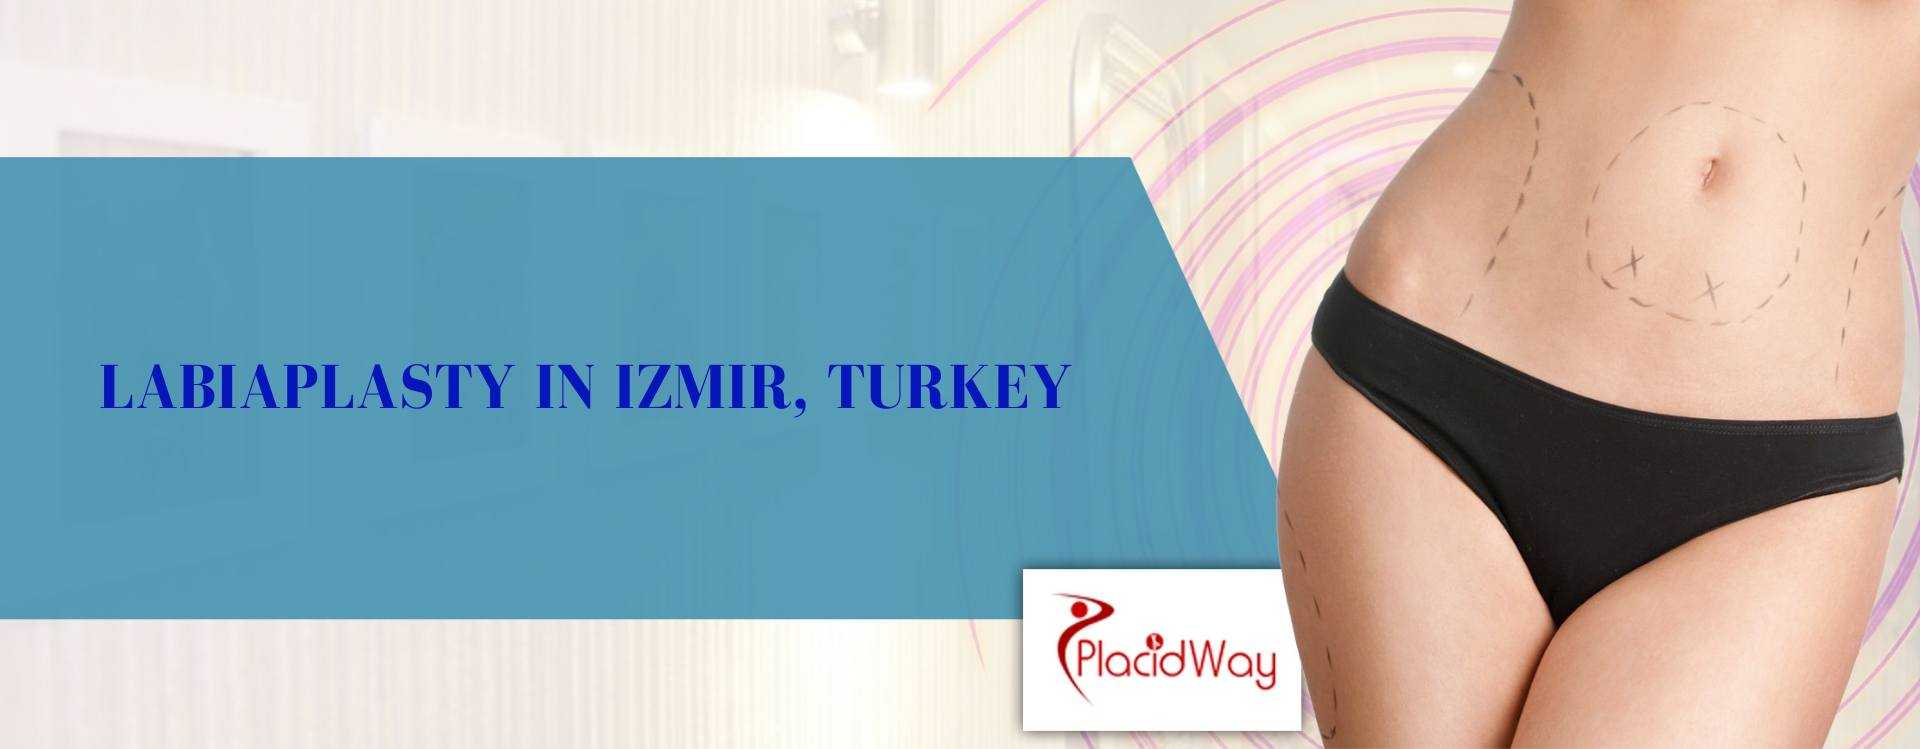 Labiaplasty Turkey